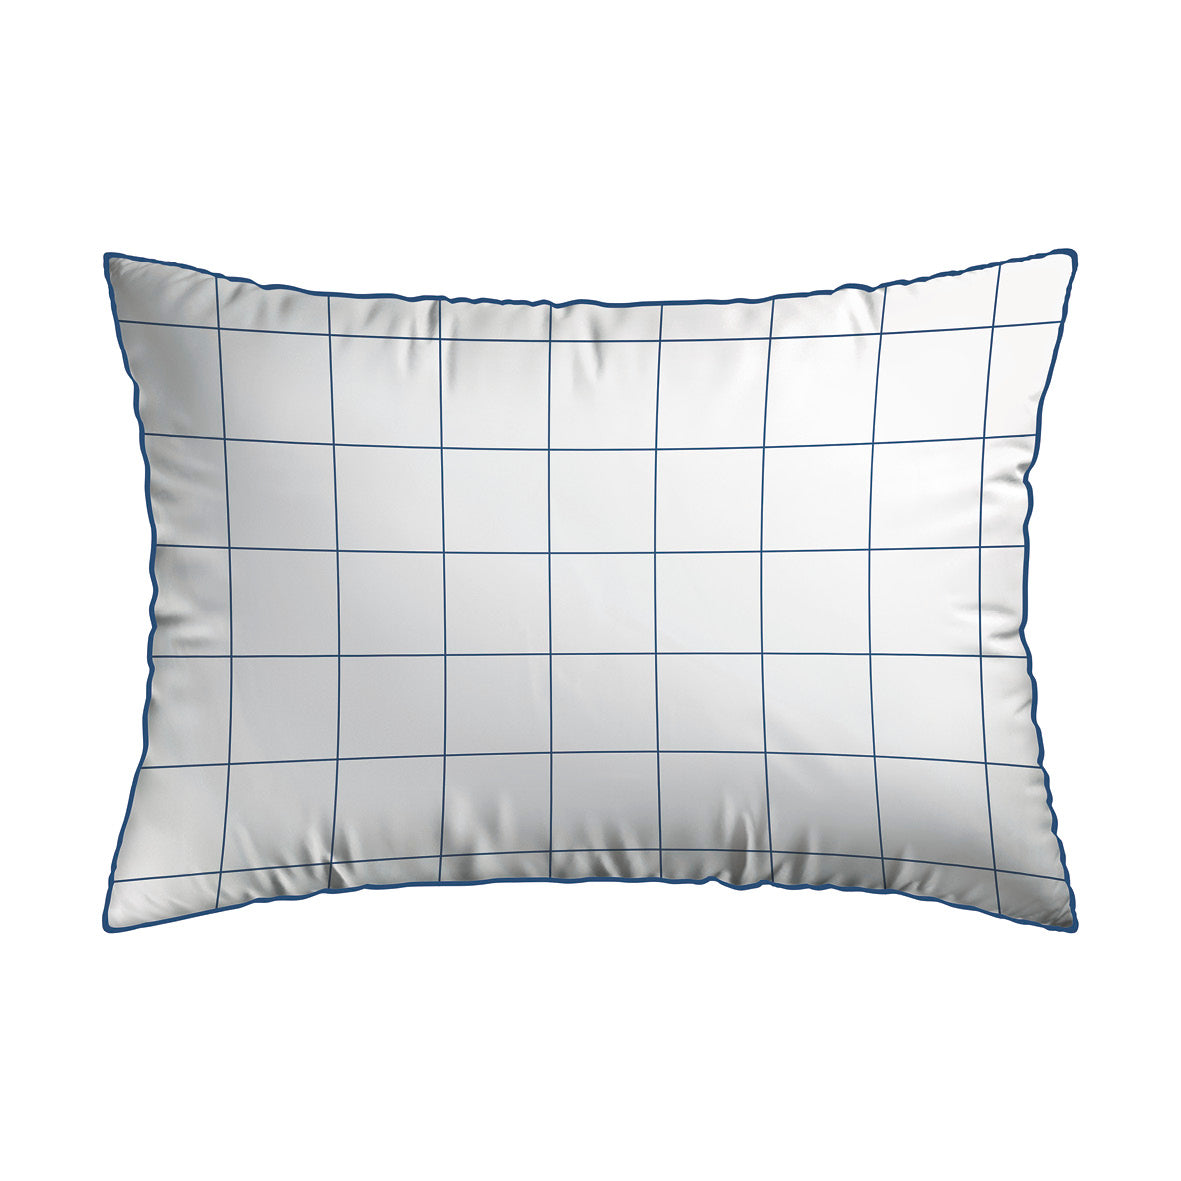 Set of 2 pillowcases cotton satin - Grands carreaux white 50 x 70 cm